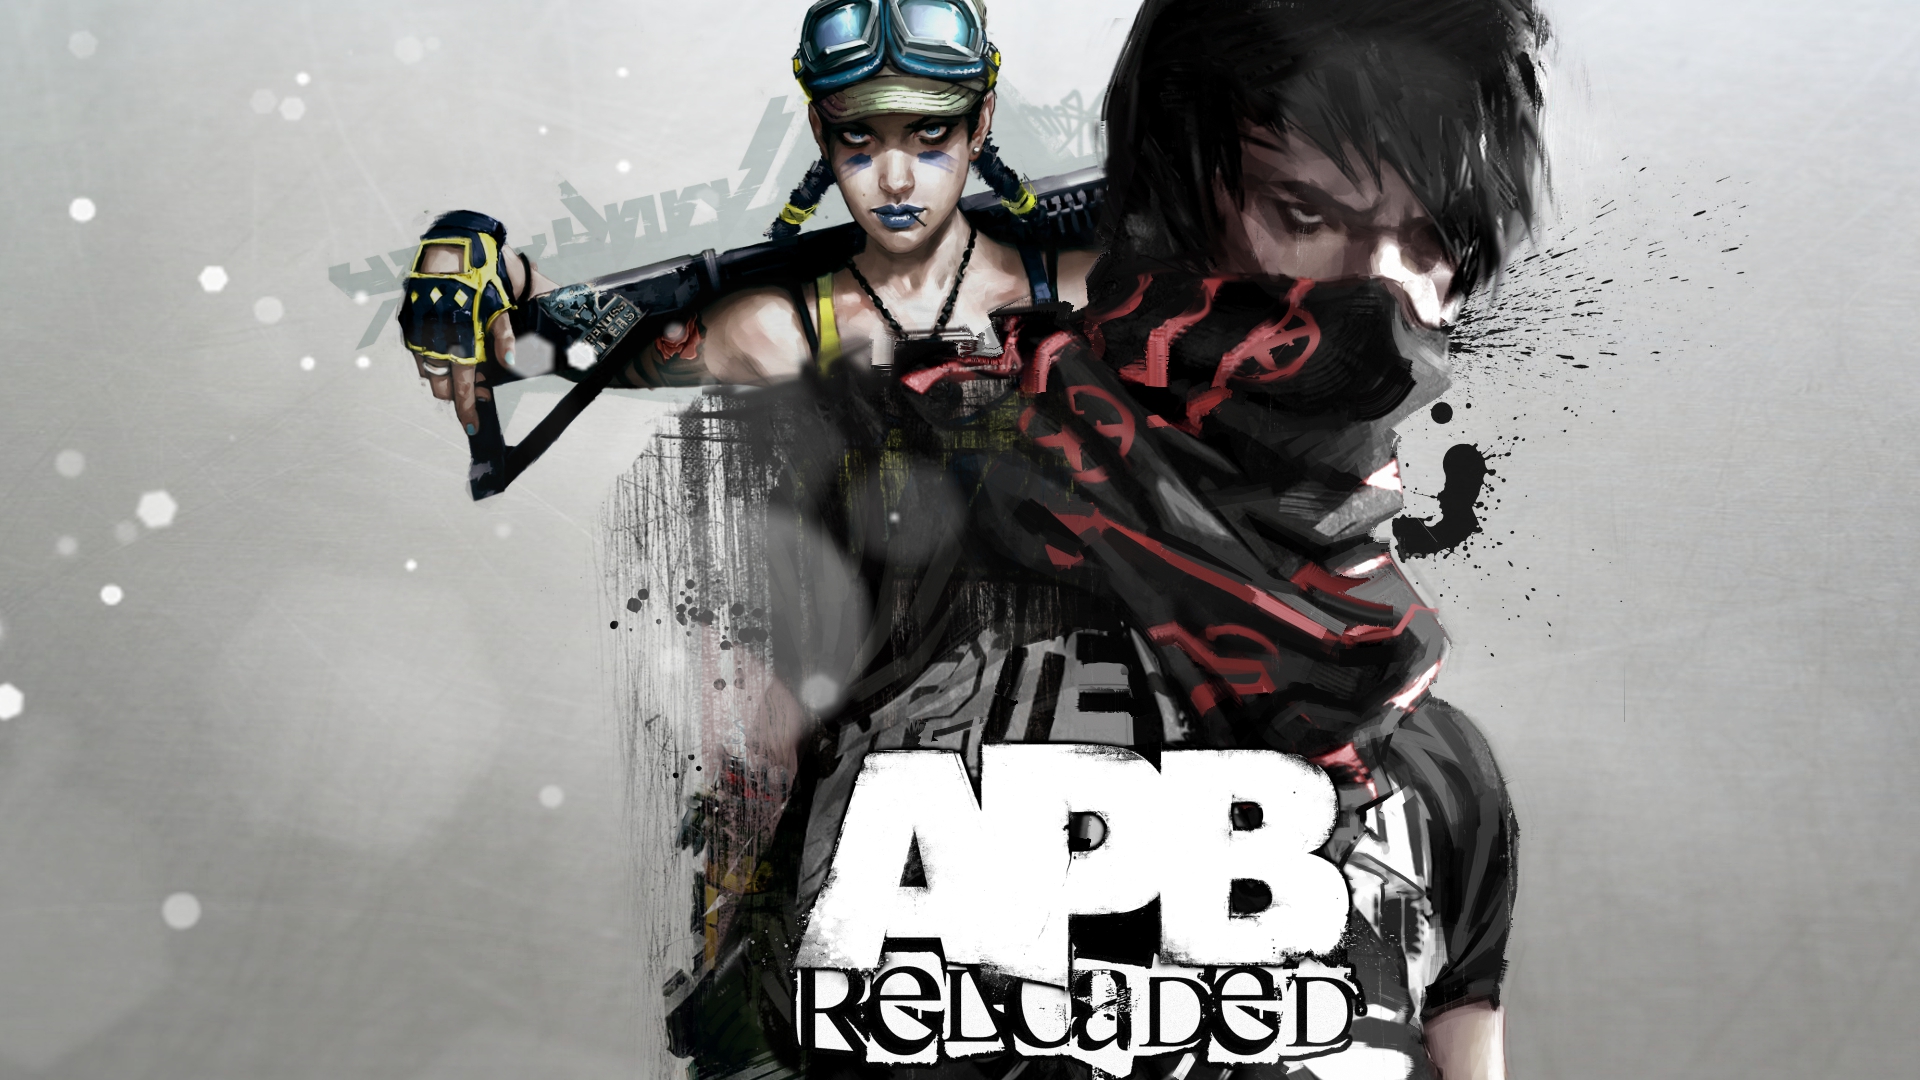 Apb reloaded не в steam фото 69